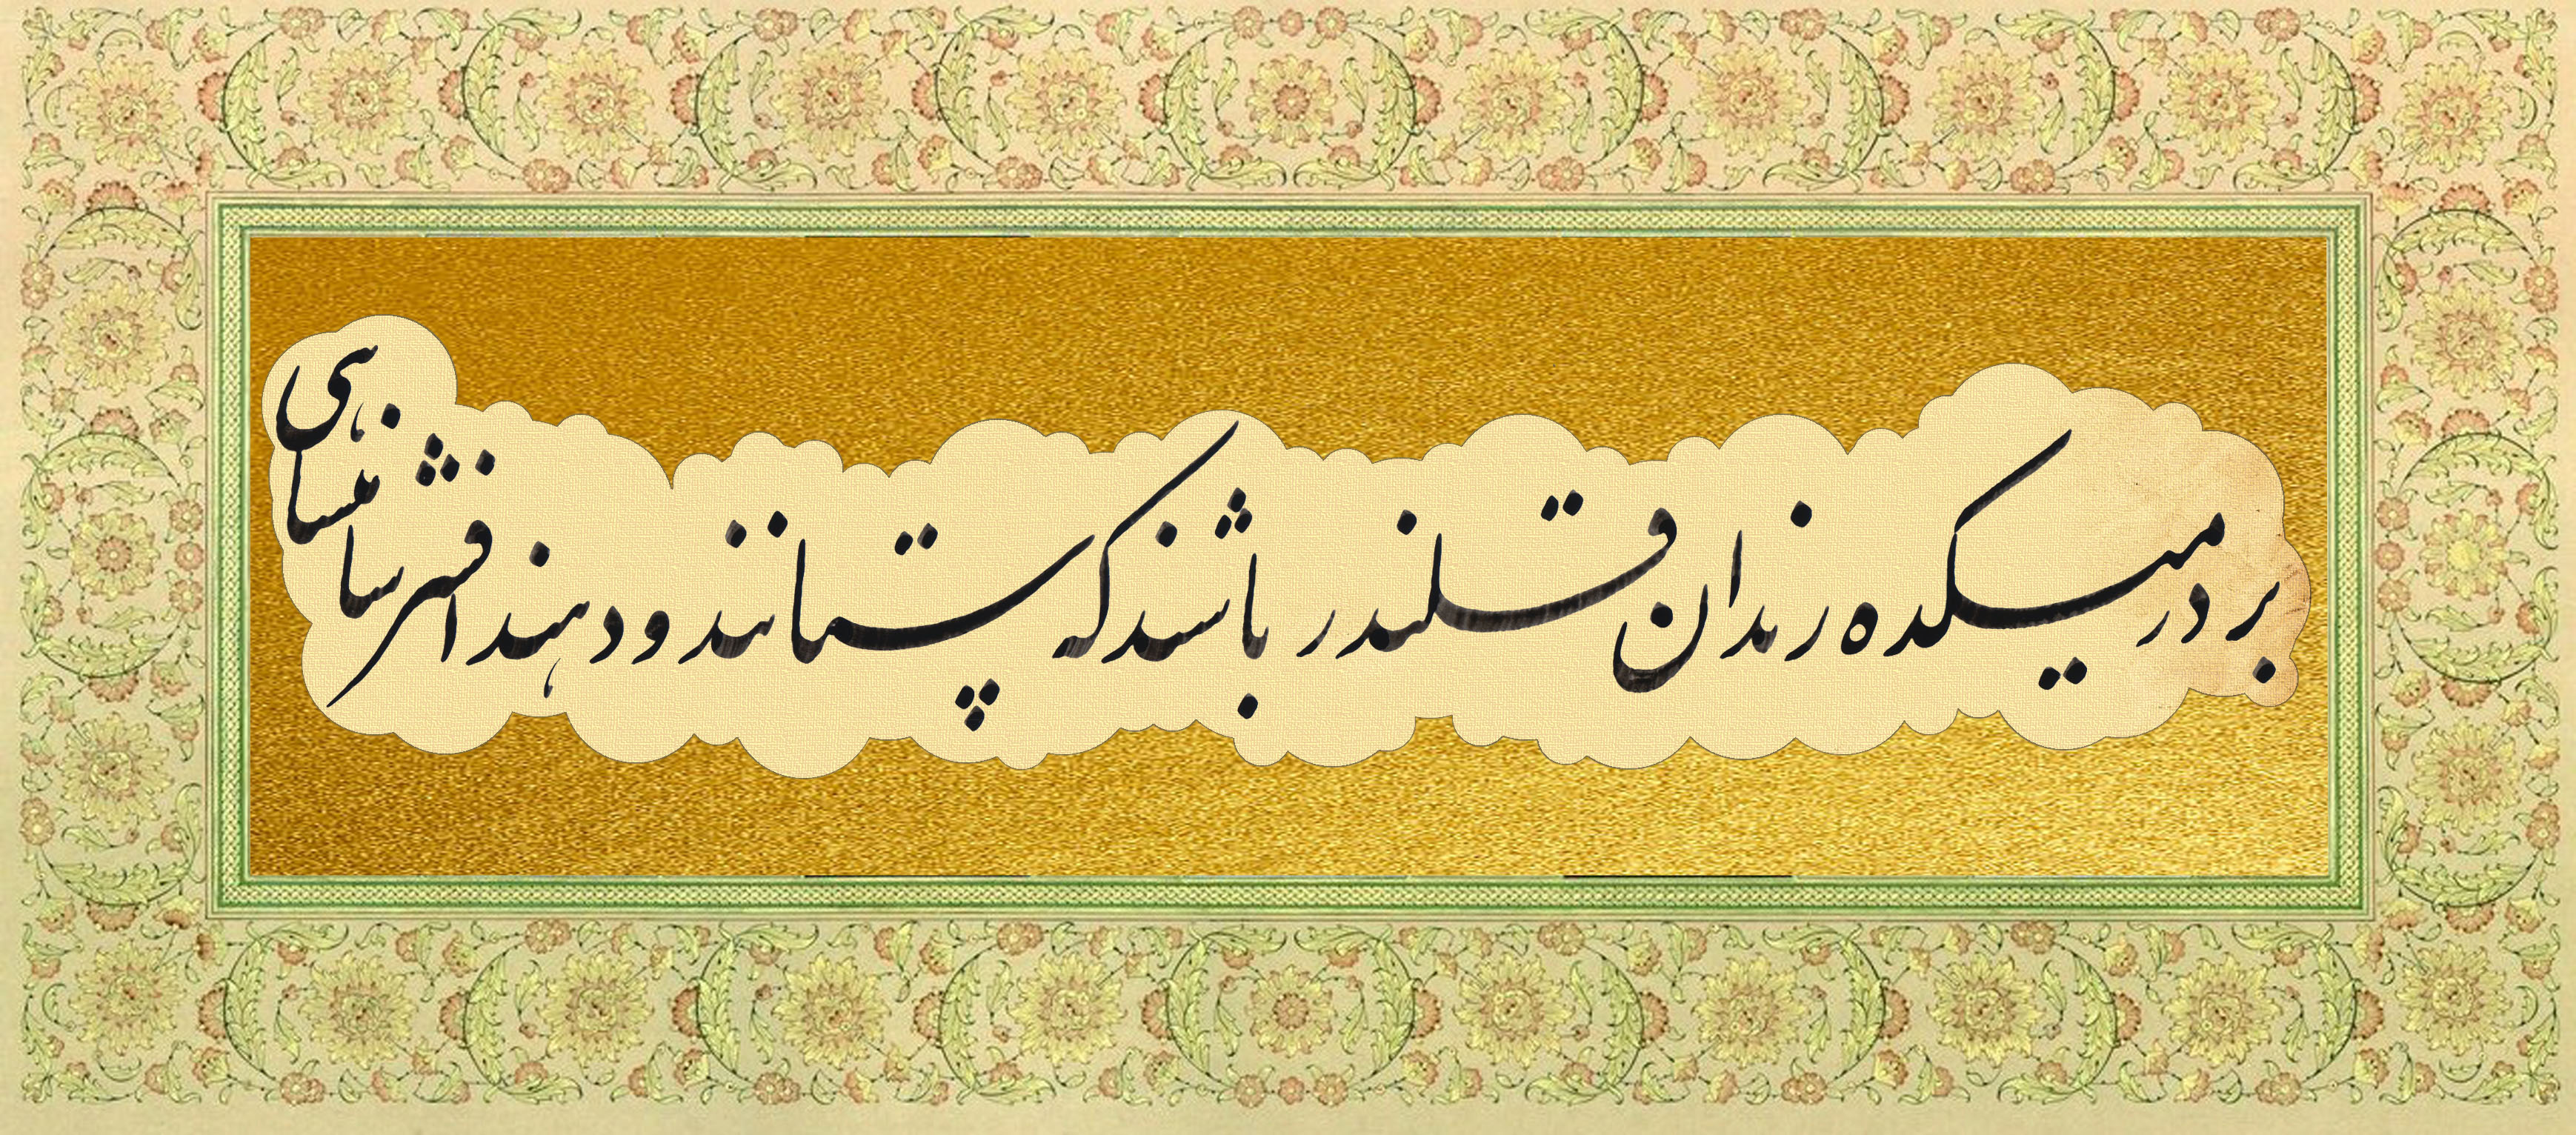 خوشنویسی - بر در میکده رندان - علیرضا رشیدی تبریزی